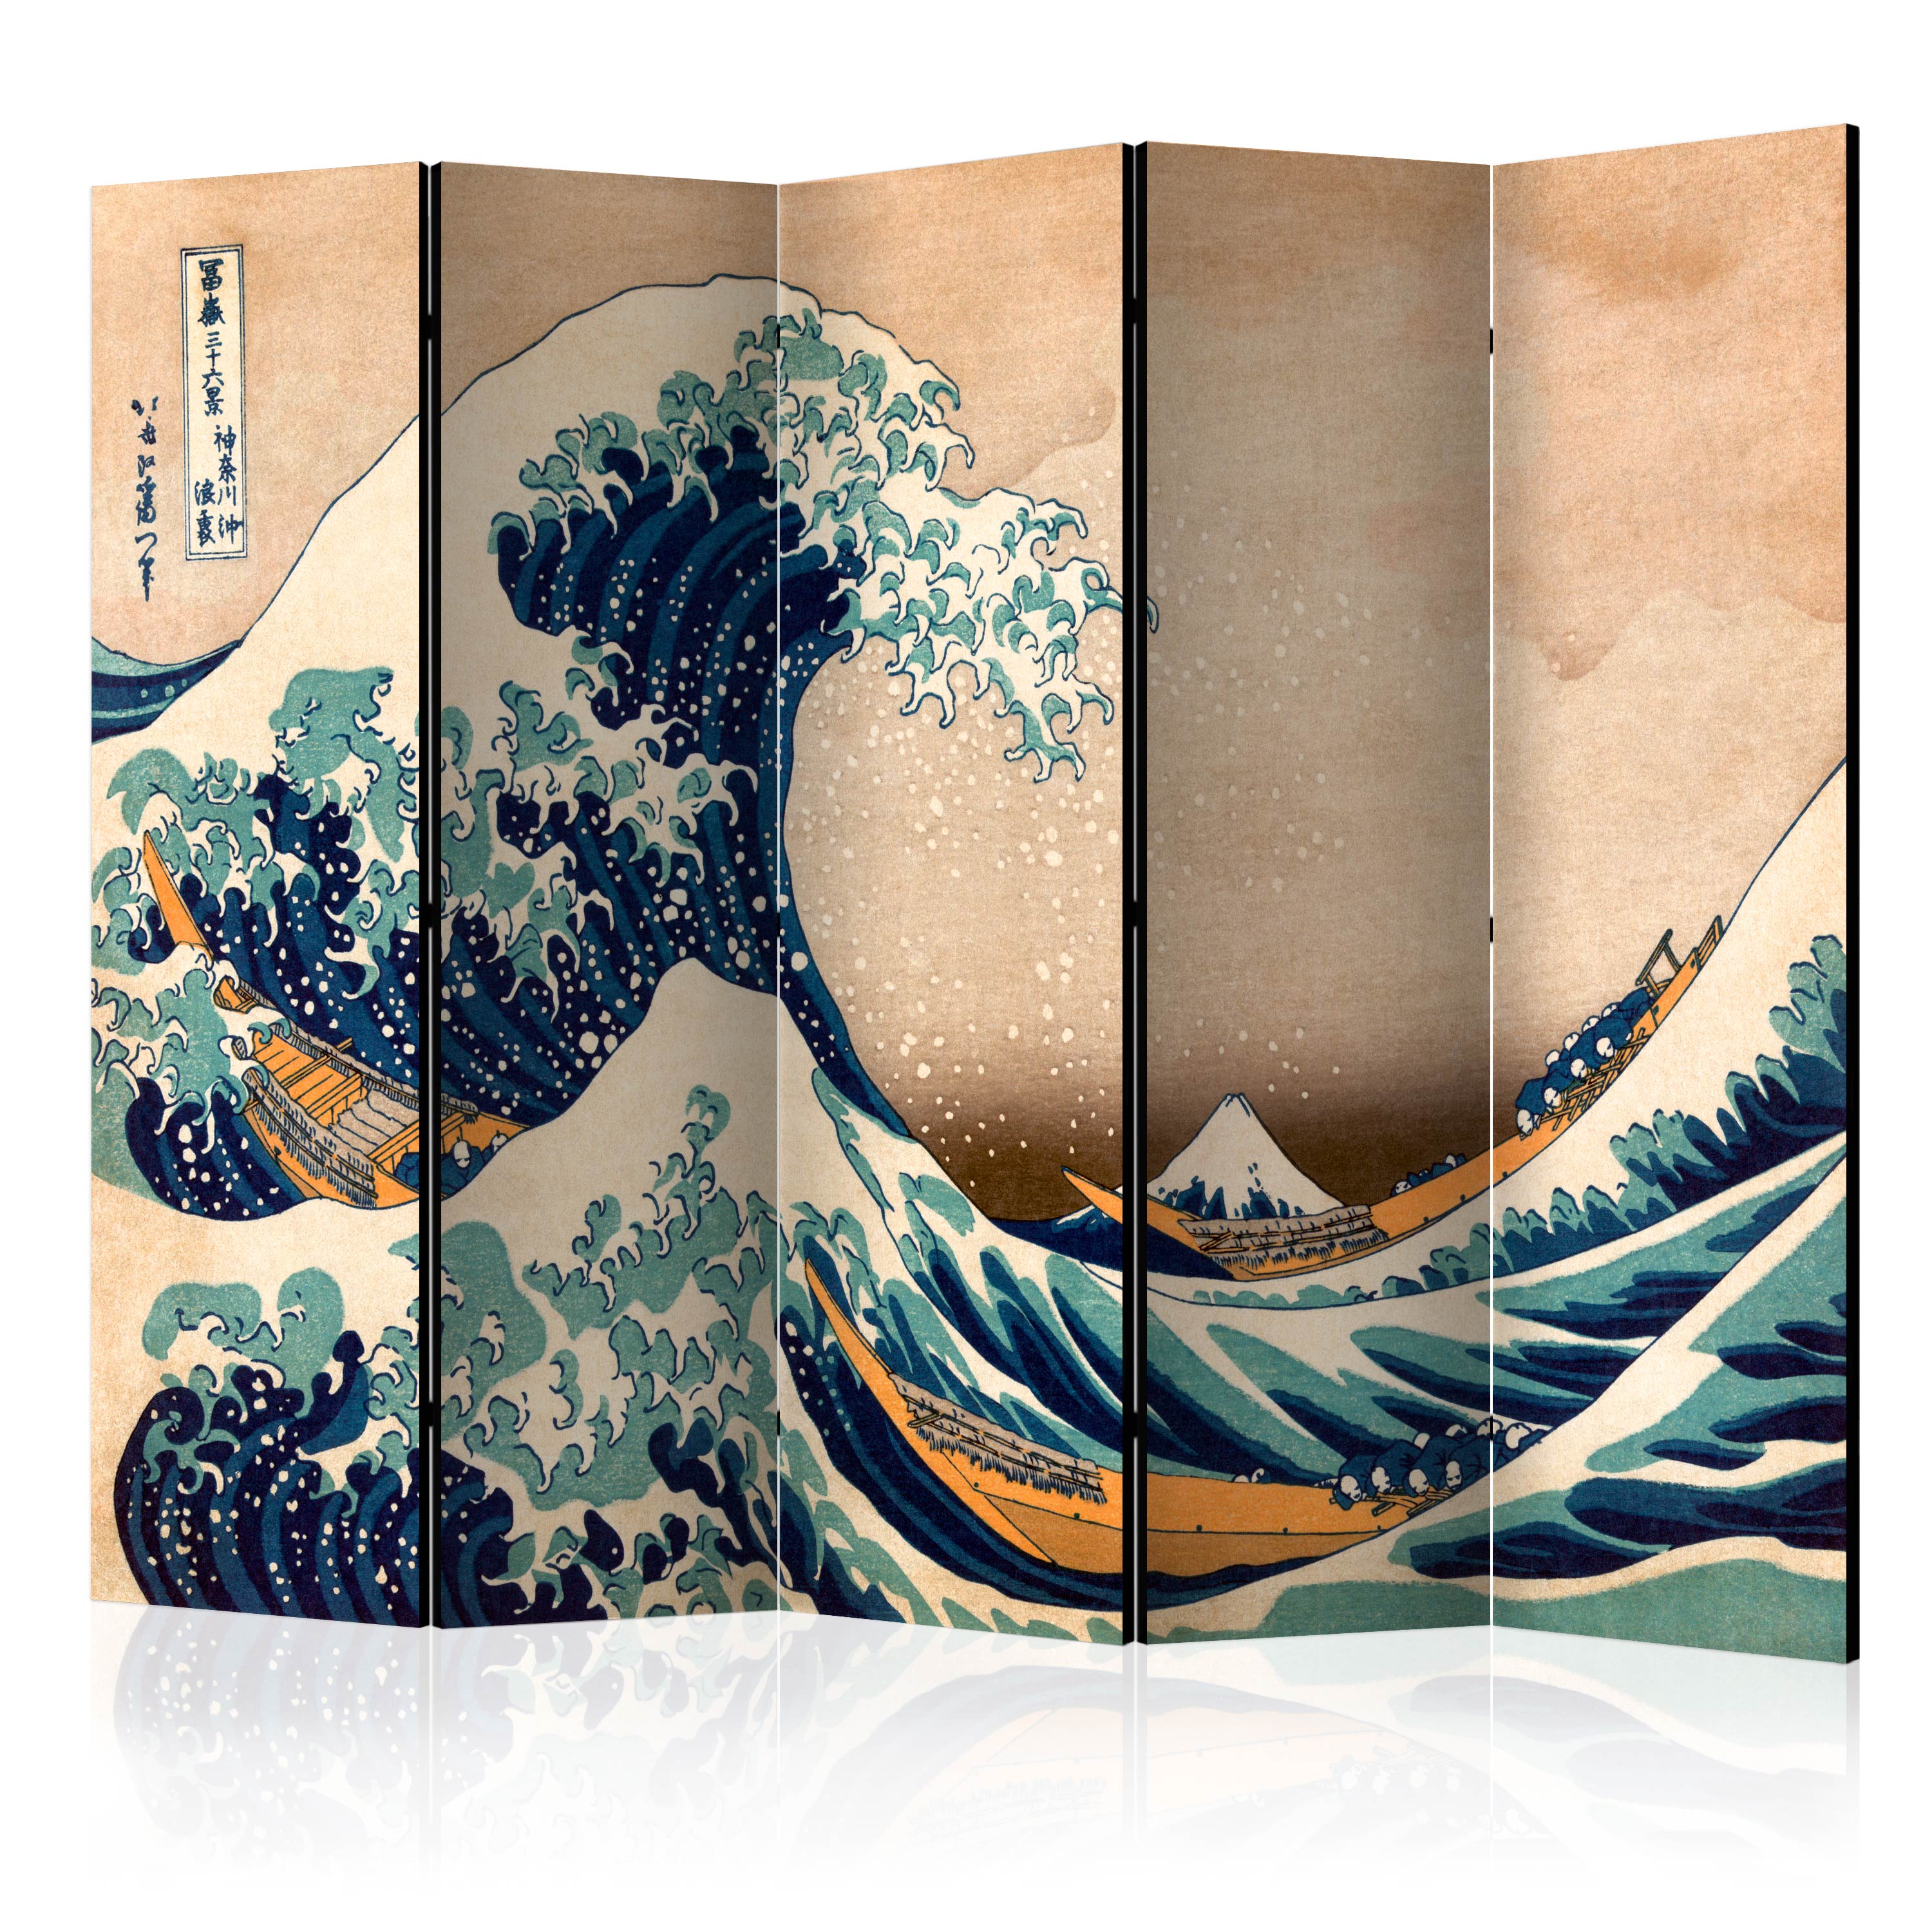 Paravan Artgeist, Hokusai: The Great Wave off Kanagawa (Reproduction) II, 5 parti- 2.25 x 1.72 m